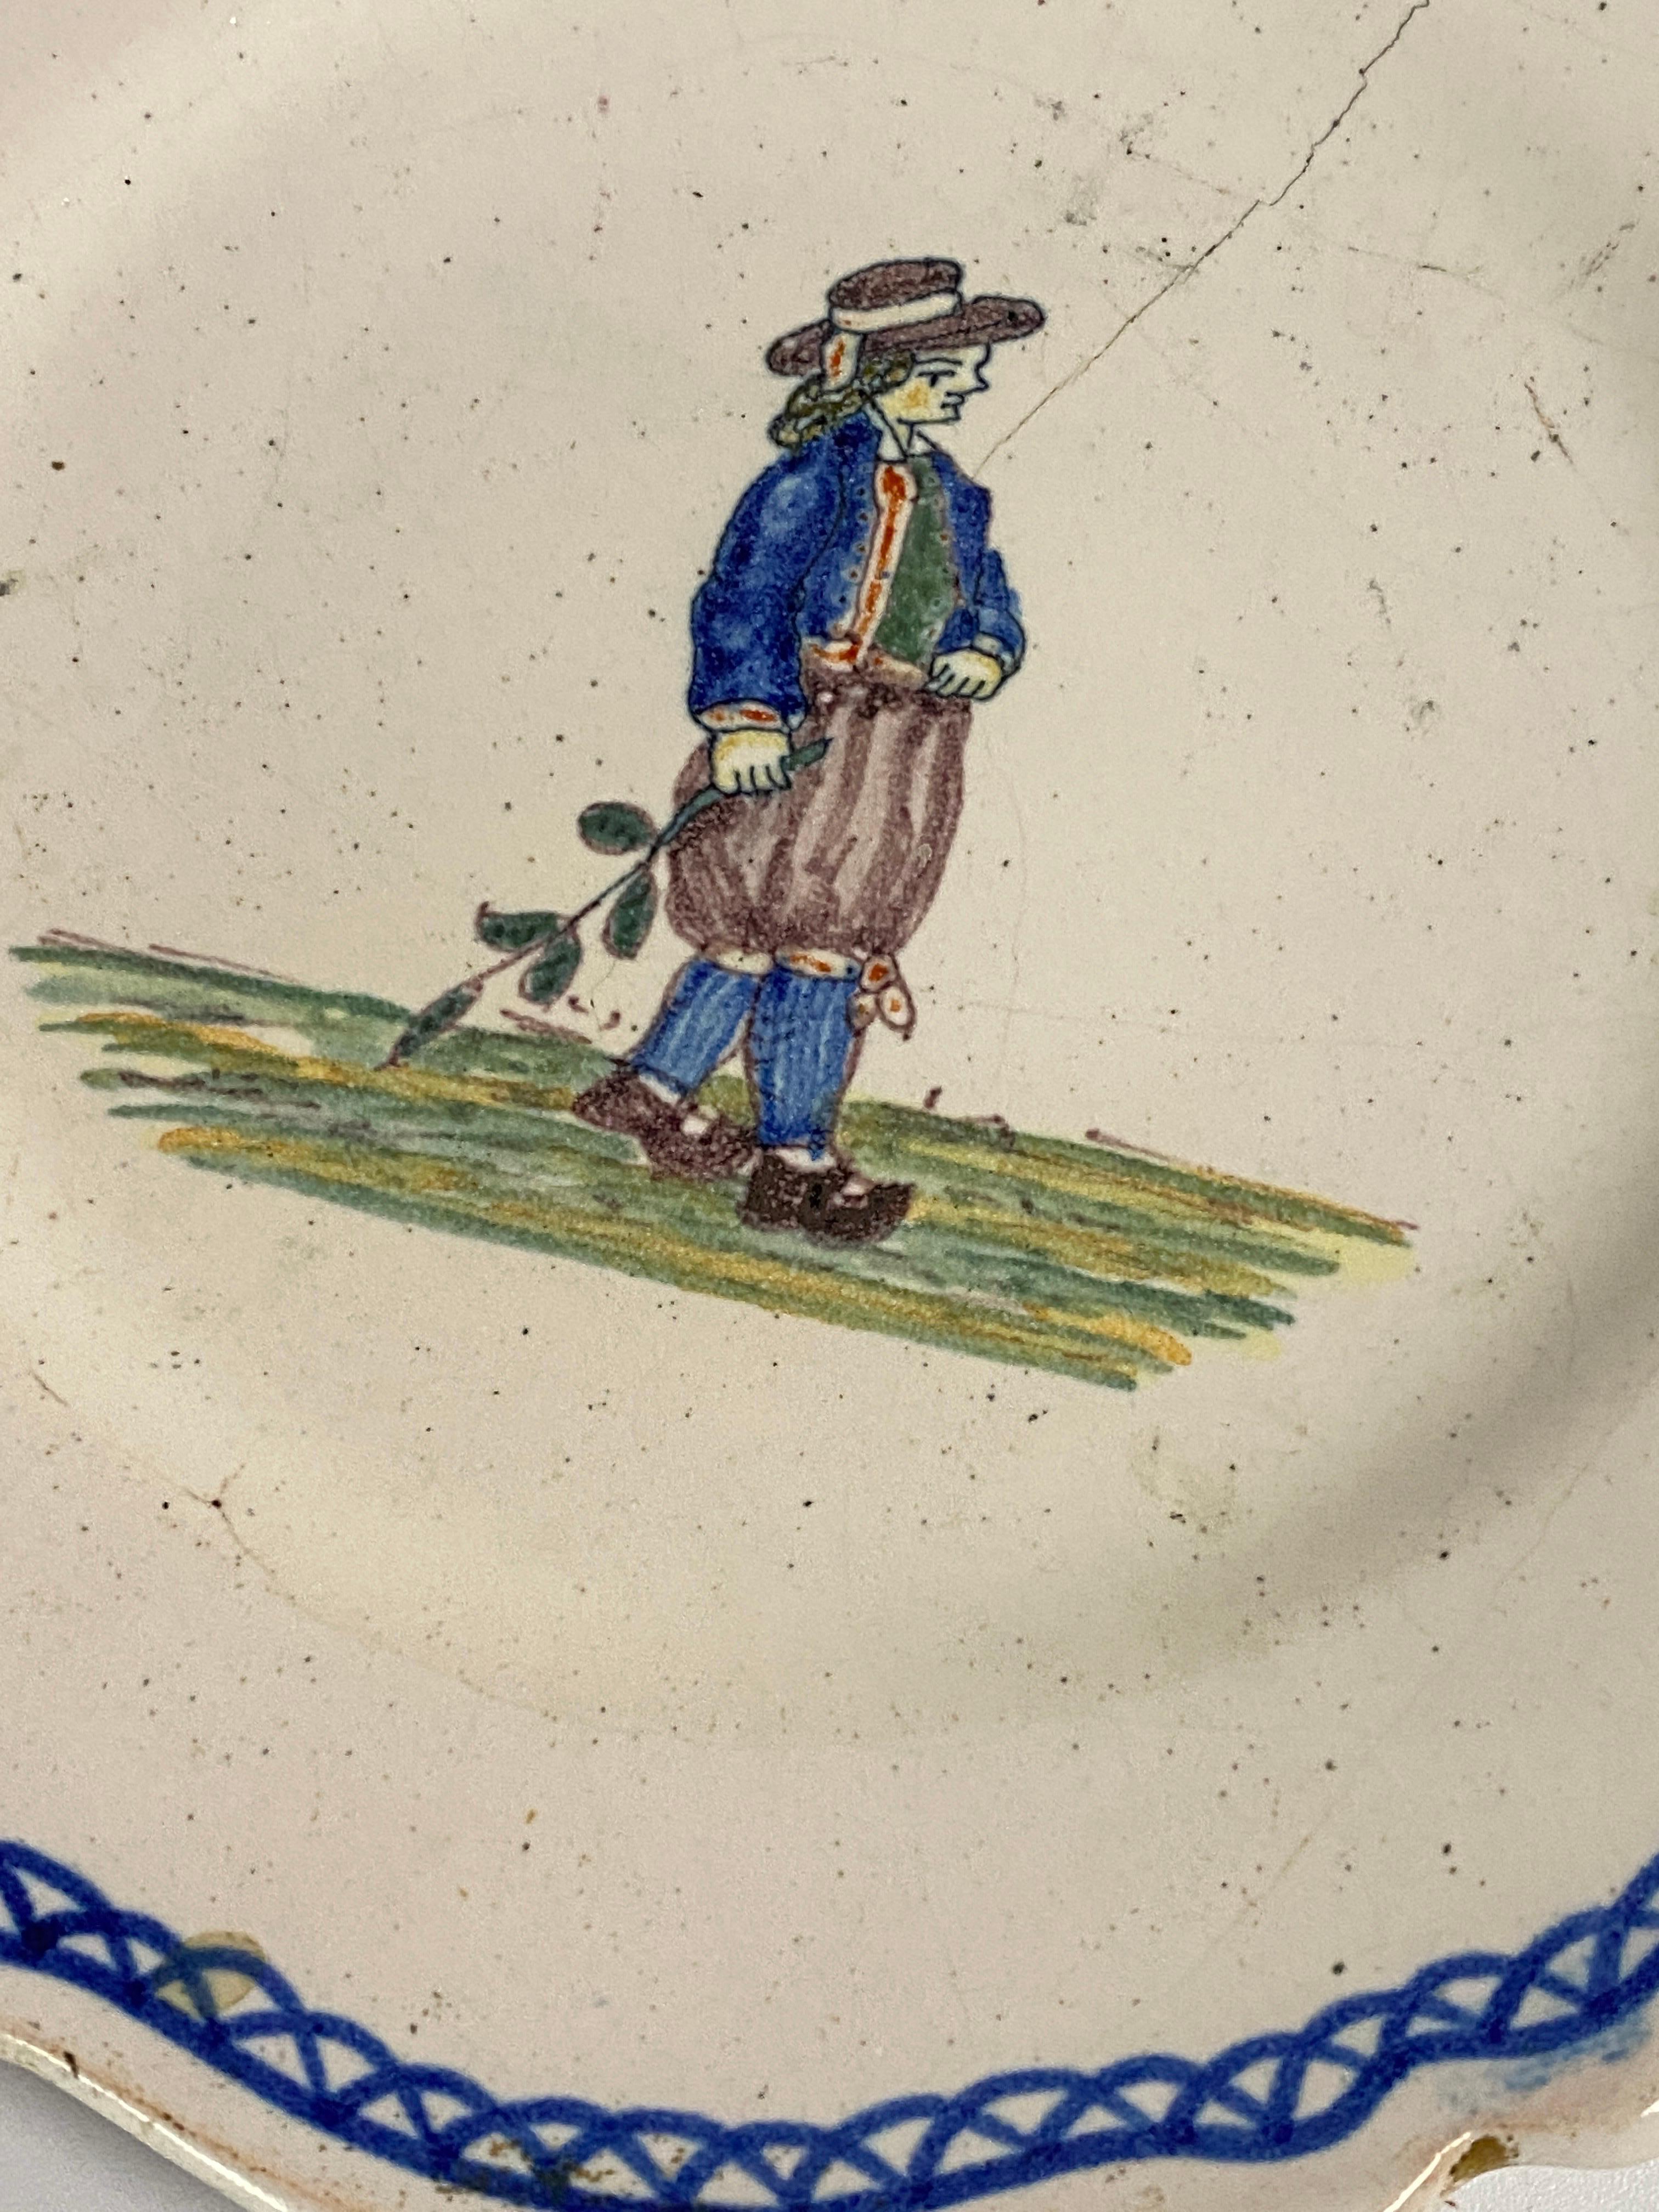 C'est une assiette en faïence, fabriquée au 19ème siècle par Moustier, les couleurs sont blanc bleu vert. Elle est signée au dos, avec un X représentant le monogramme de Moustier.